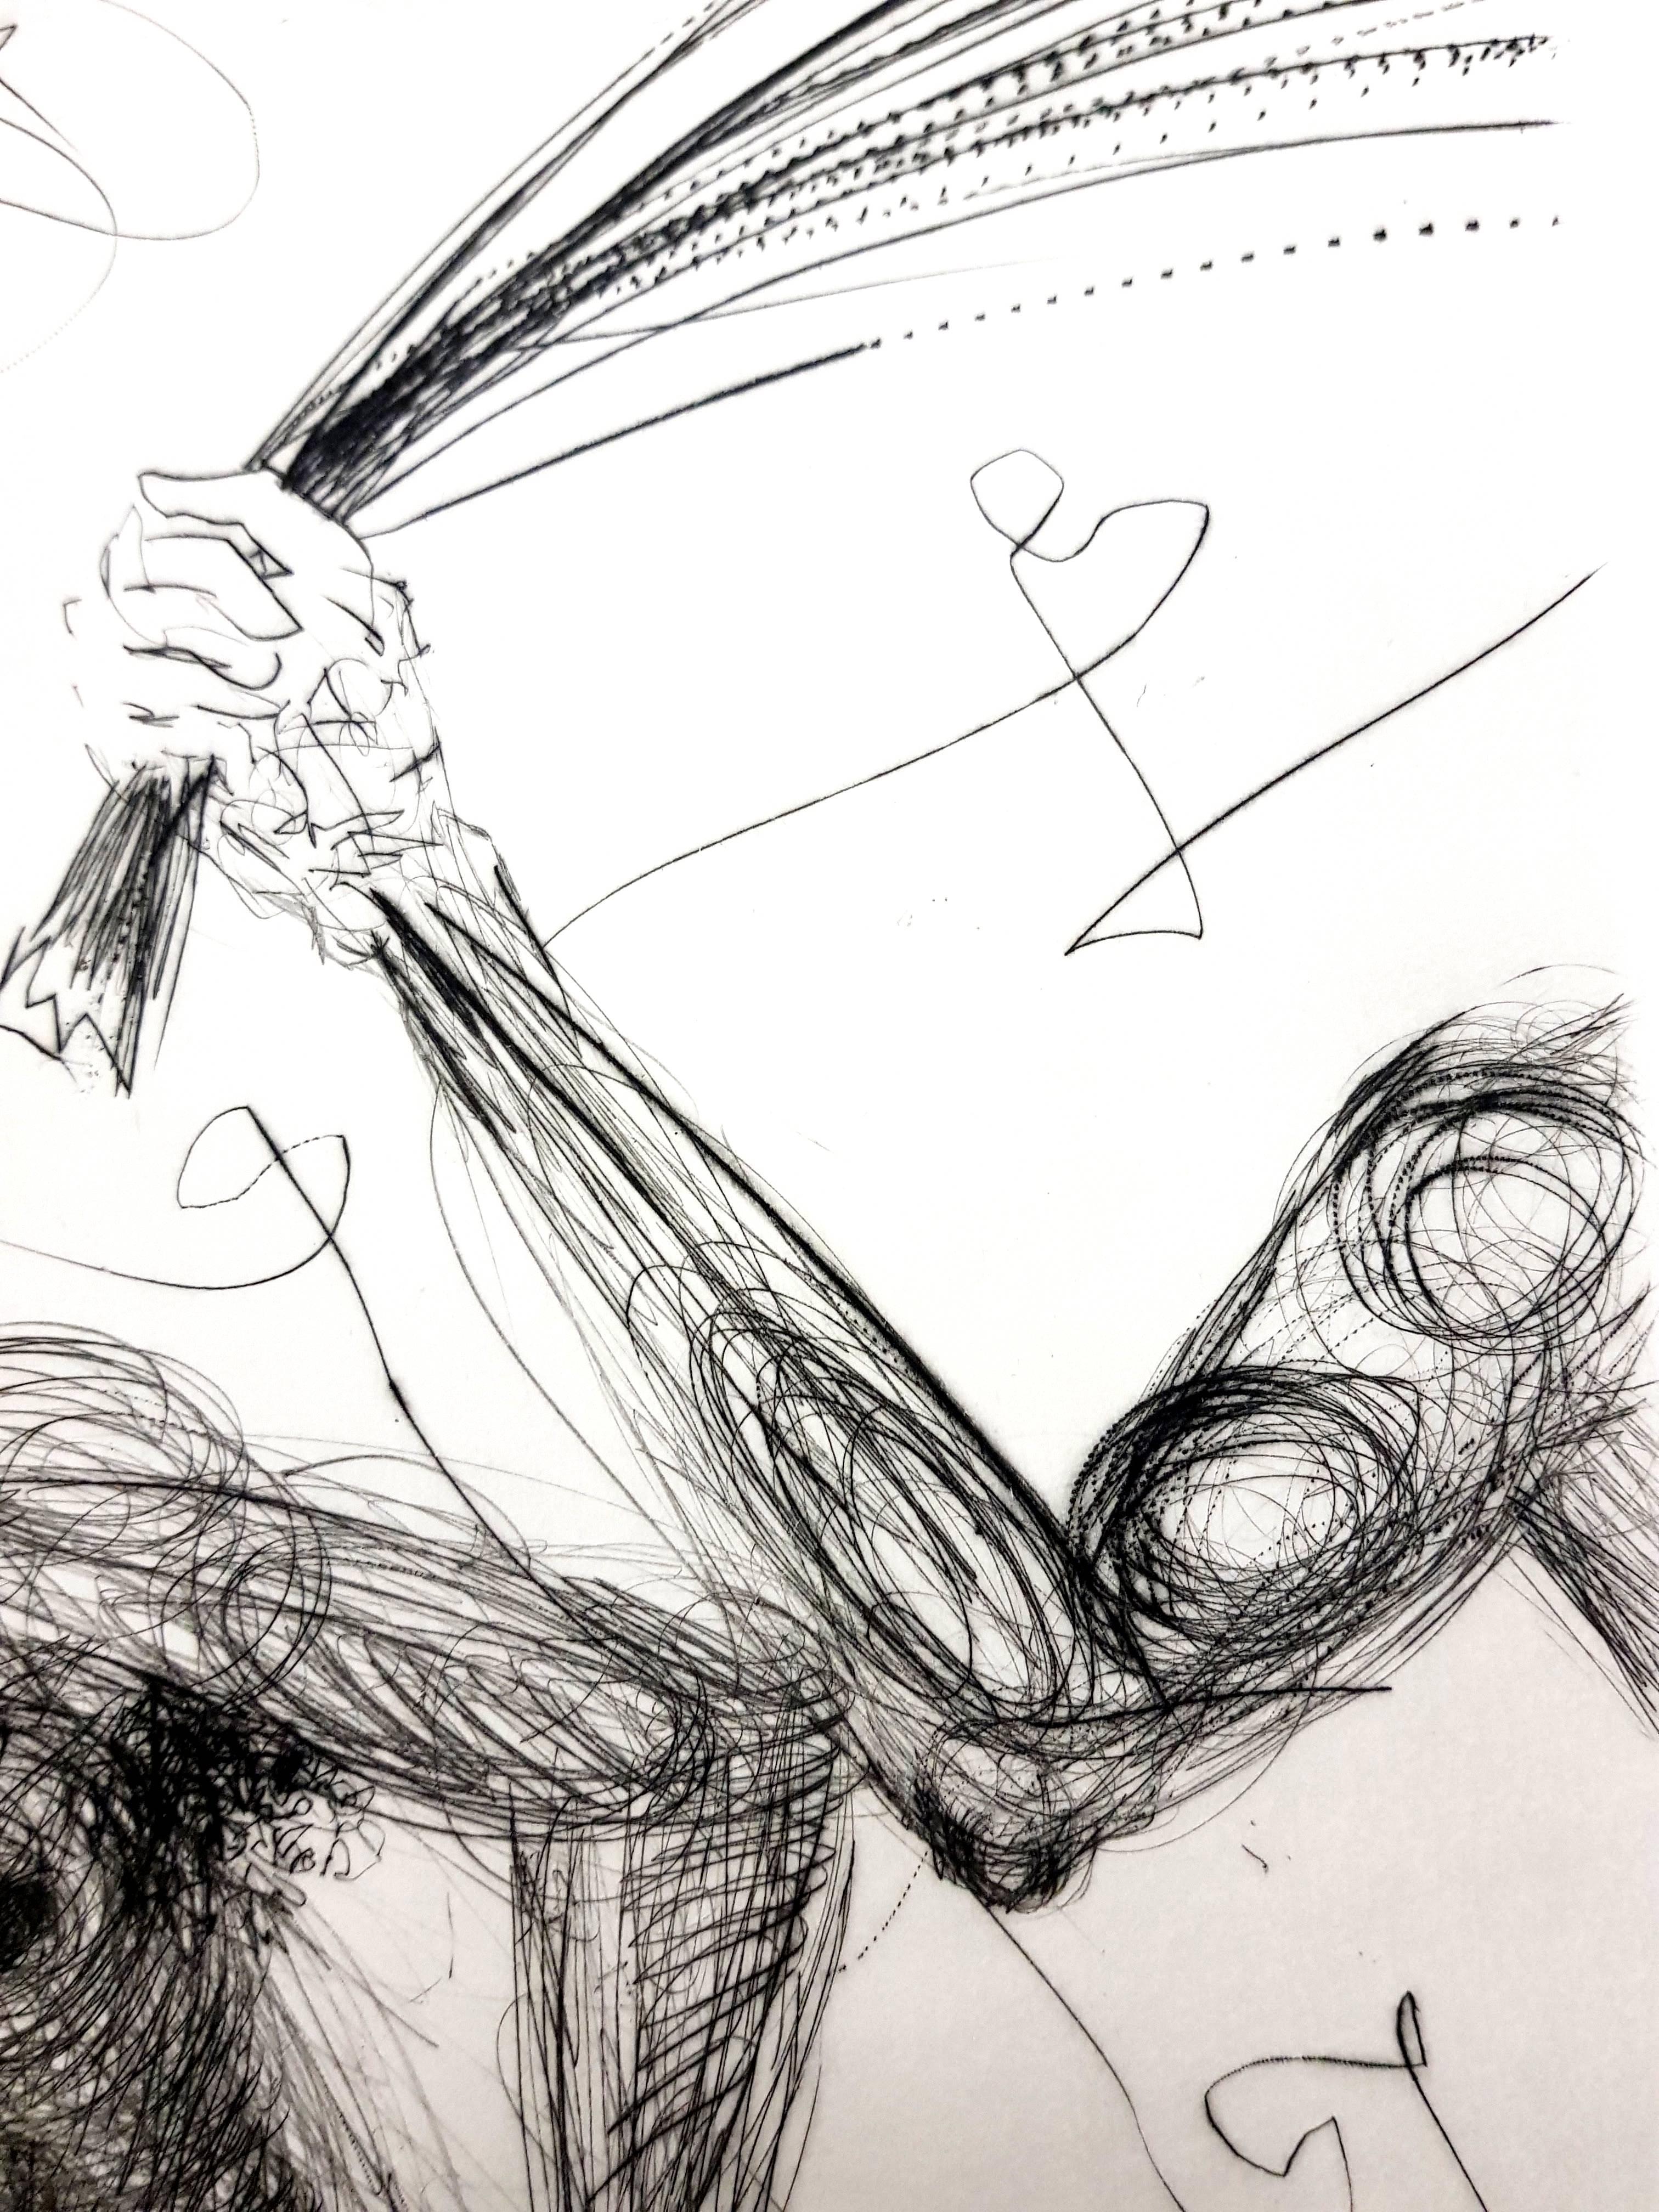 Salvador Dali - Frau mit Peitsche - Original Stempel-Signierte Radierung
Von Dali signierter Stempel
Auflage von 294 Exemplaren. 
Papier : Pergamentbogen. 
Abmessungen: 16x12